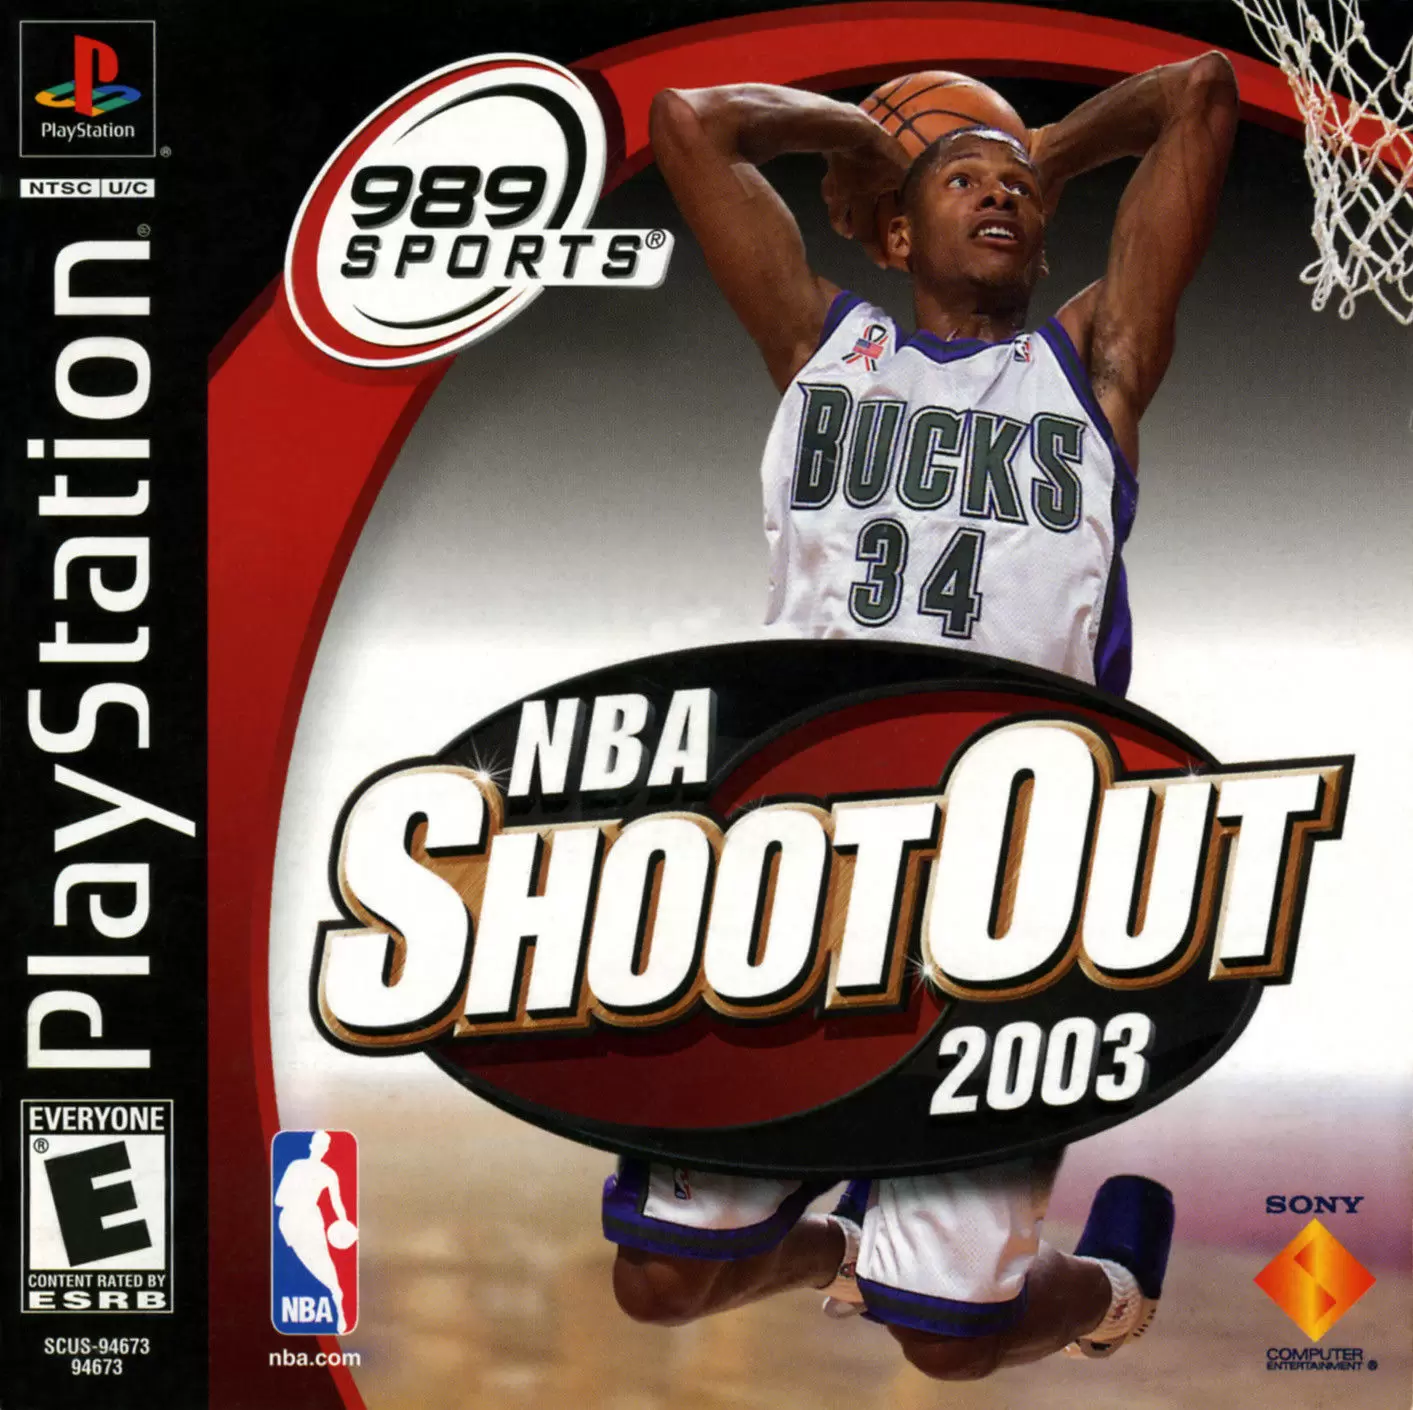 Playstation games - NBA ShootOut 2003